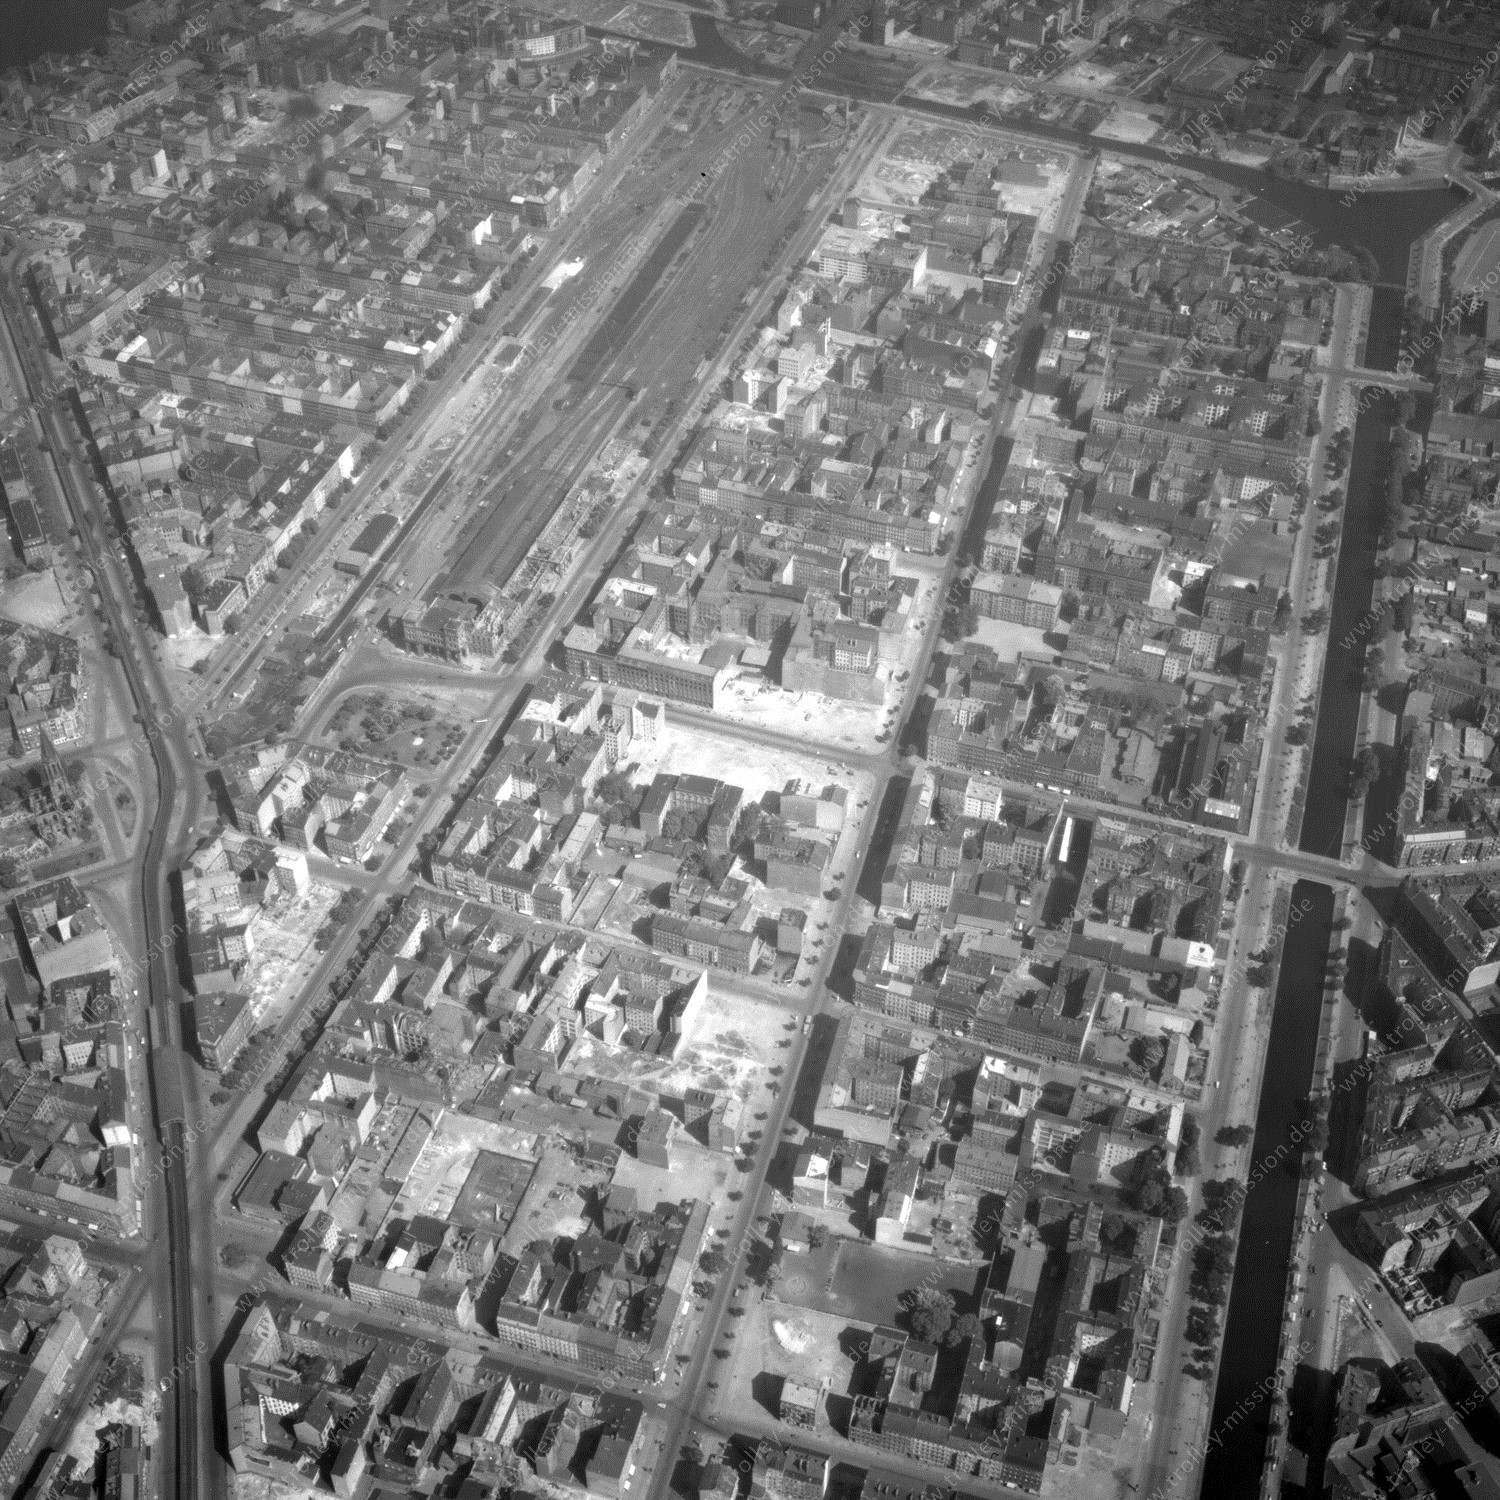 Alte Fotos und Luftbilder von Berlin - Luftbildaufnahme Nr. 06 - Historische Luftaufnahmen von West-Berlin aus dem Jahr 1954 - Flugstrecke Mike